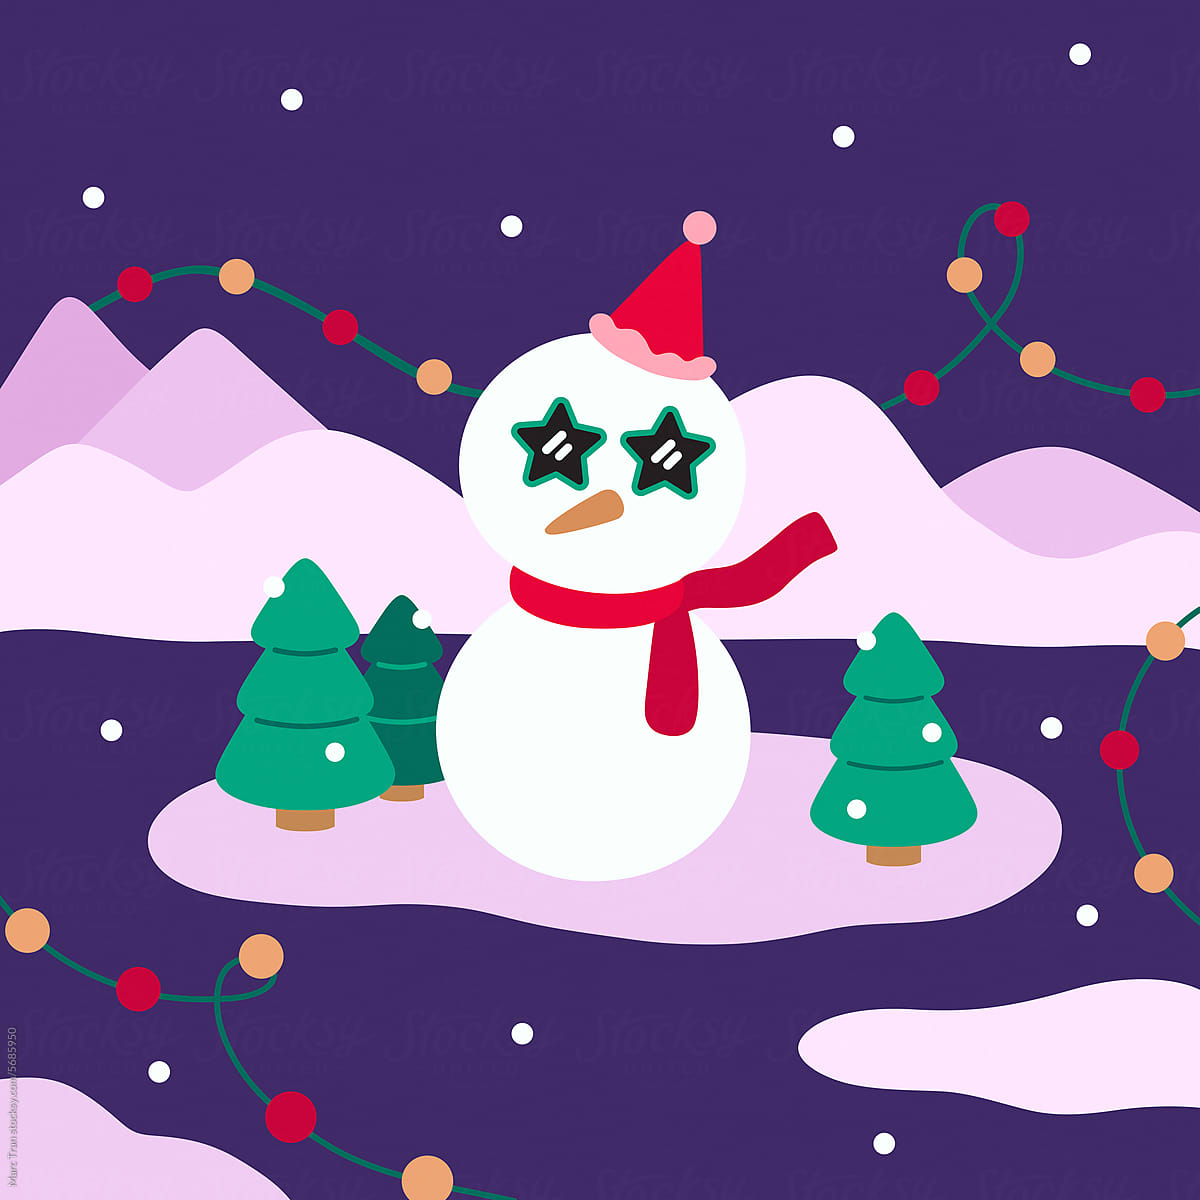 Vector cartoon illustration of a cute snowman and a Christmas